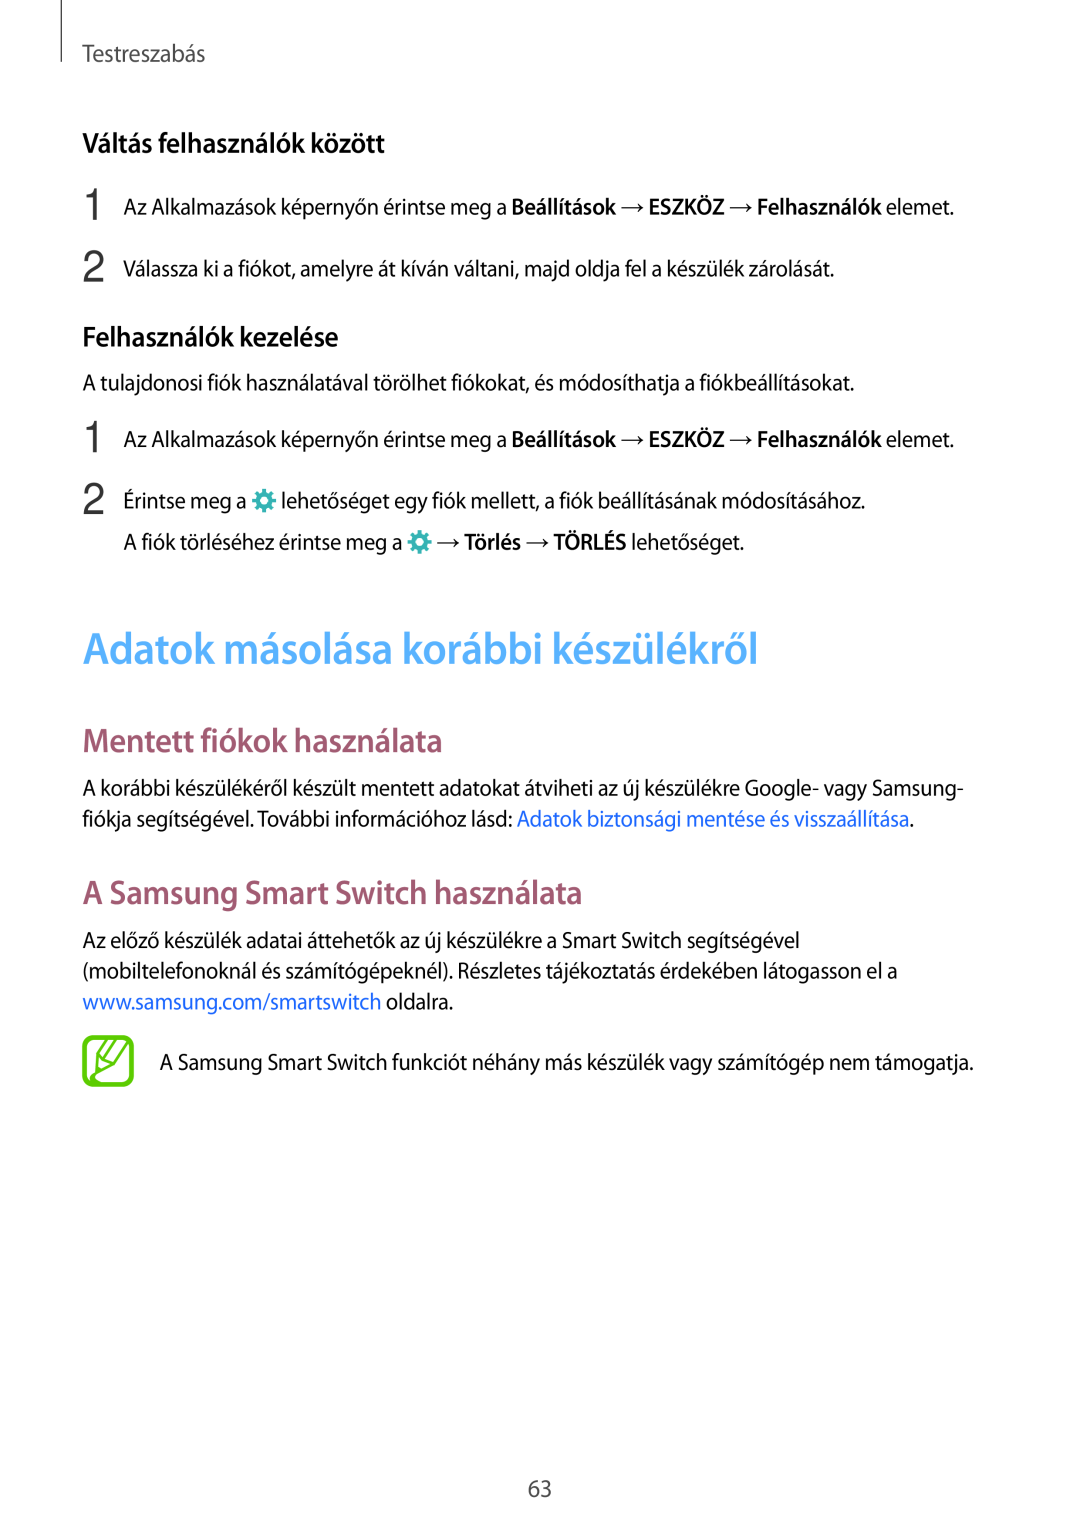 Samsung SM-T705NZWAXEH Adatok másolása korábbi készülékről, Mentett fiókok használata, A Samsung Smart Switch használata 